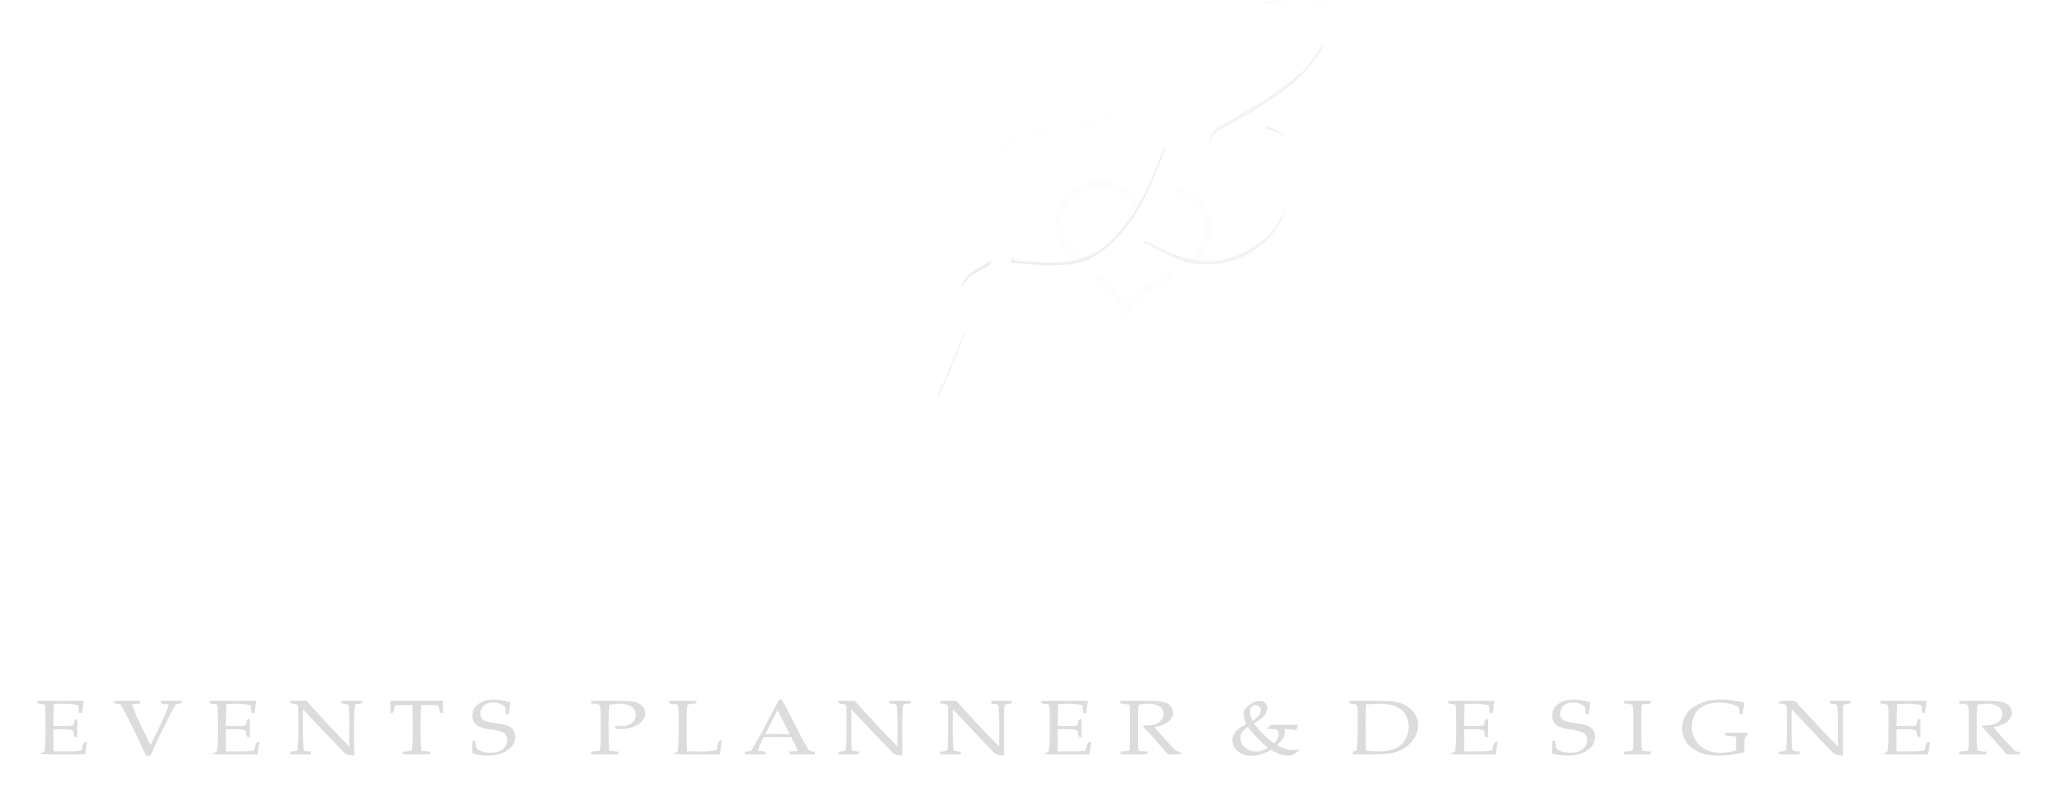 Events Planner & Designer